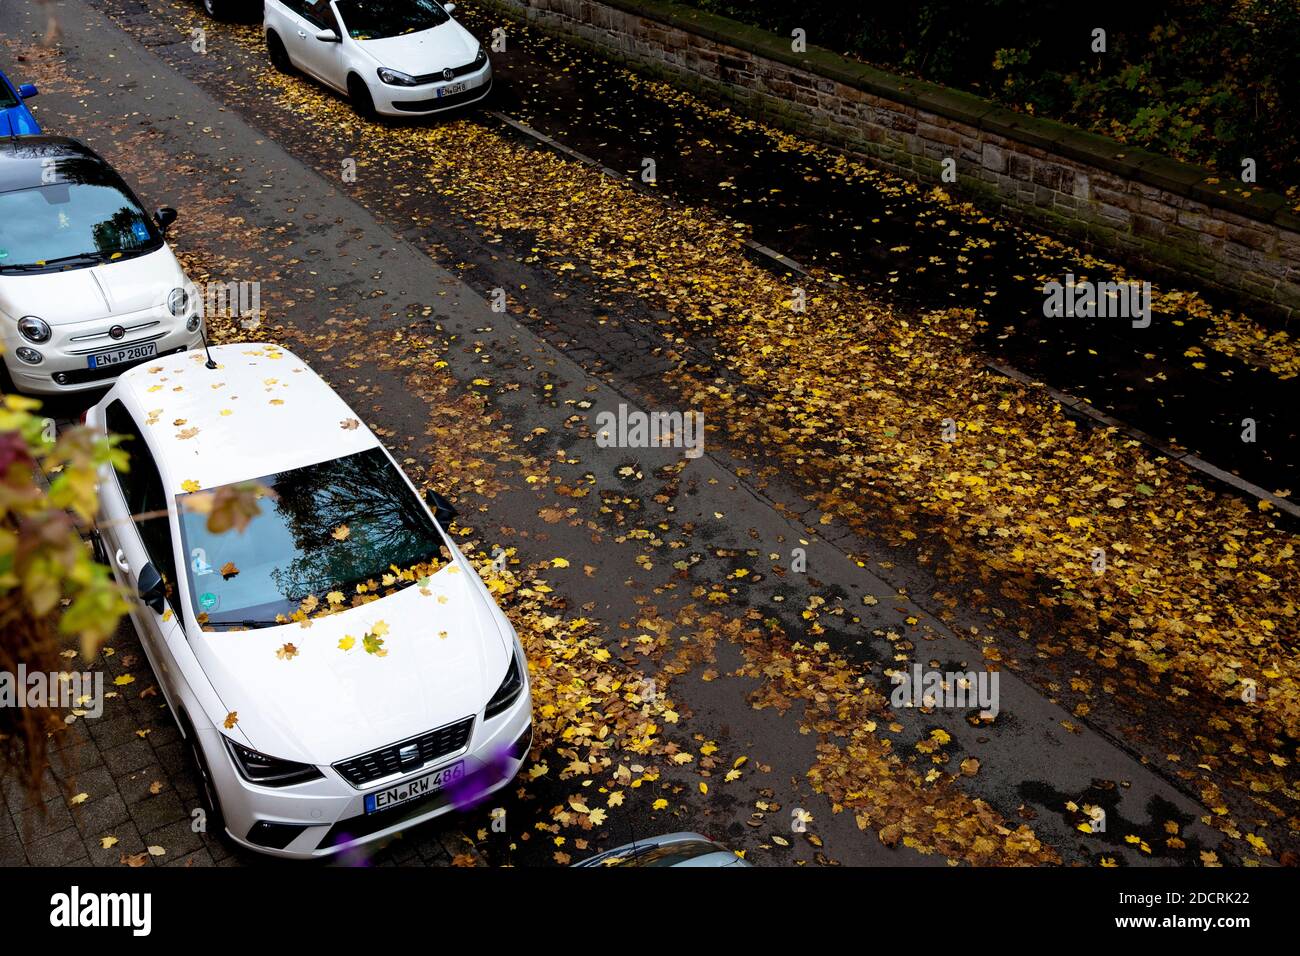 wet autumn leaves on a street, Germany.  nasses Herbstlaub liegt auf einer Strasse, Deutschland. Stock Photo